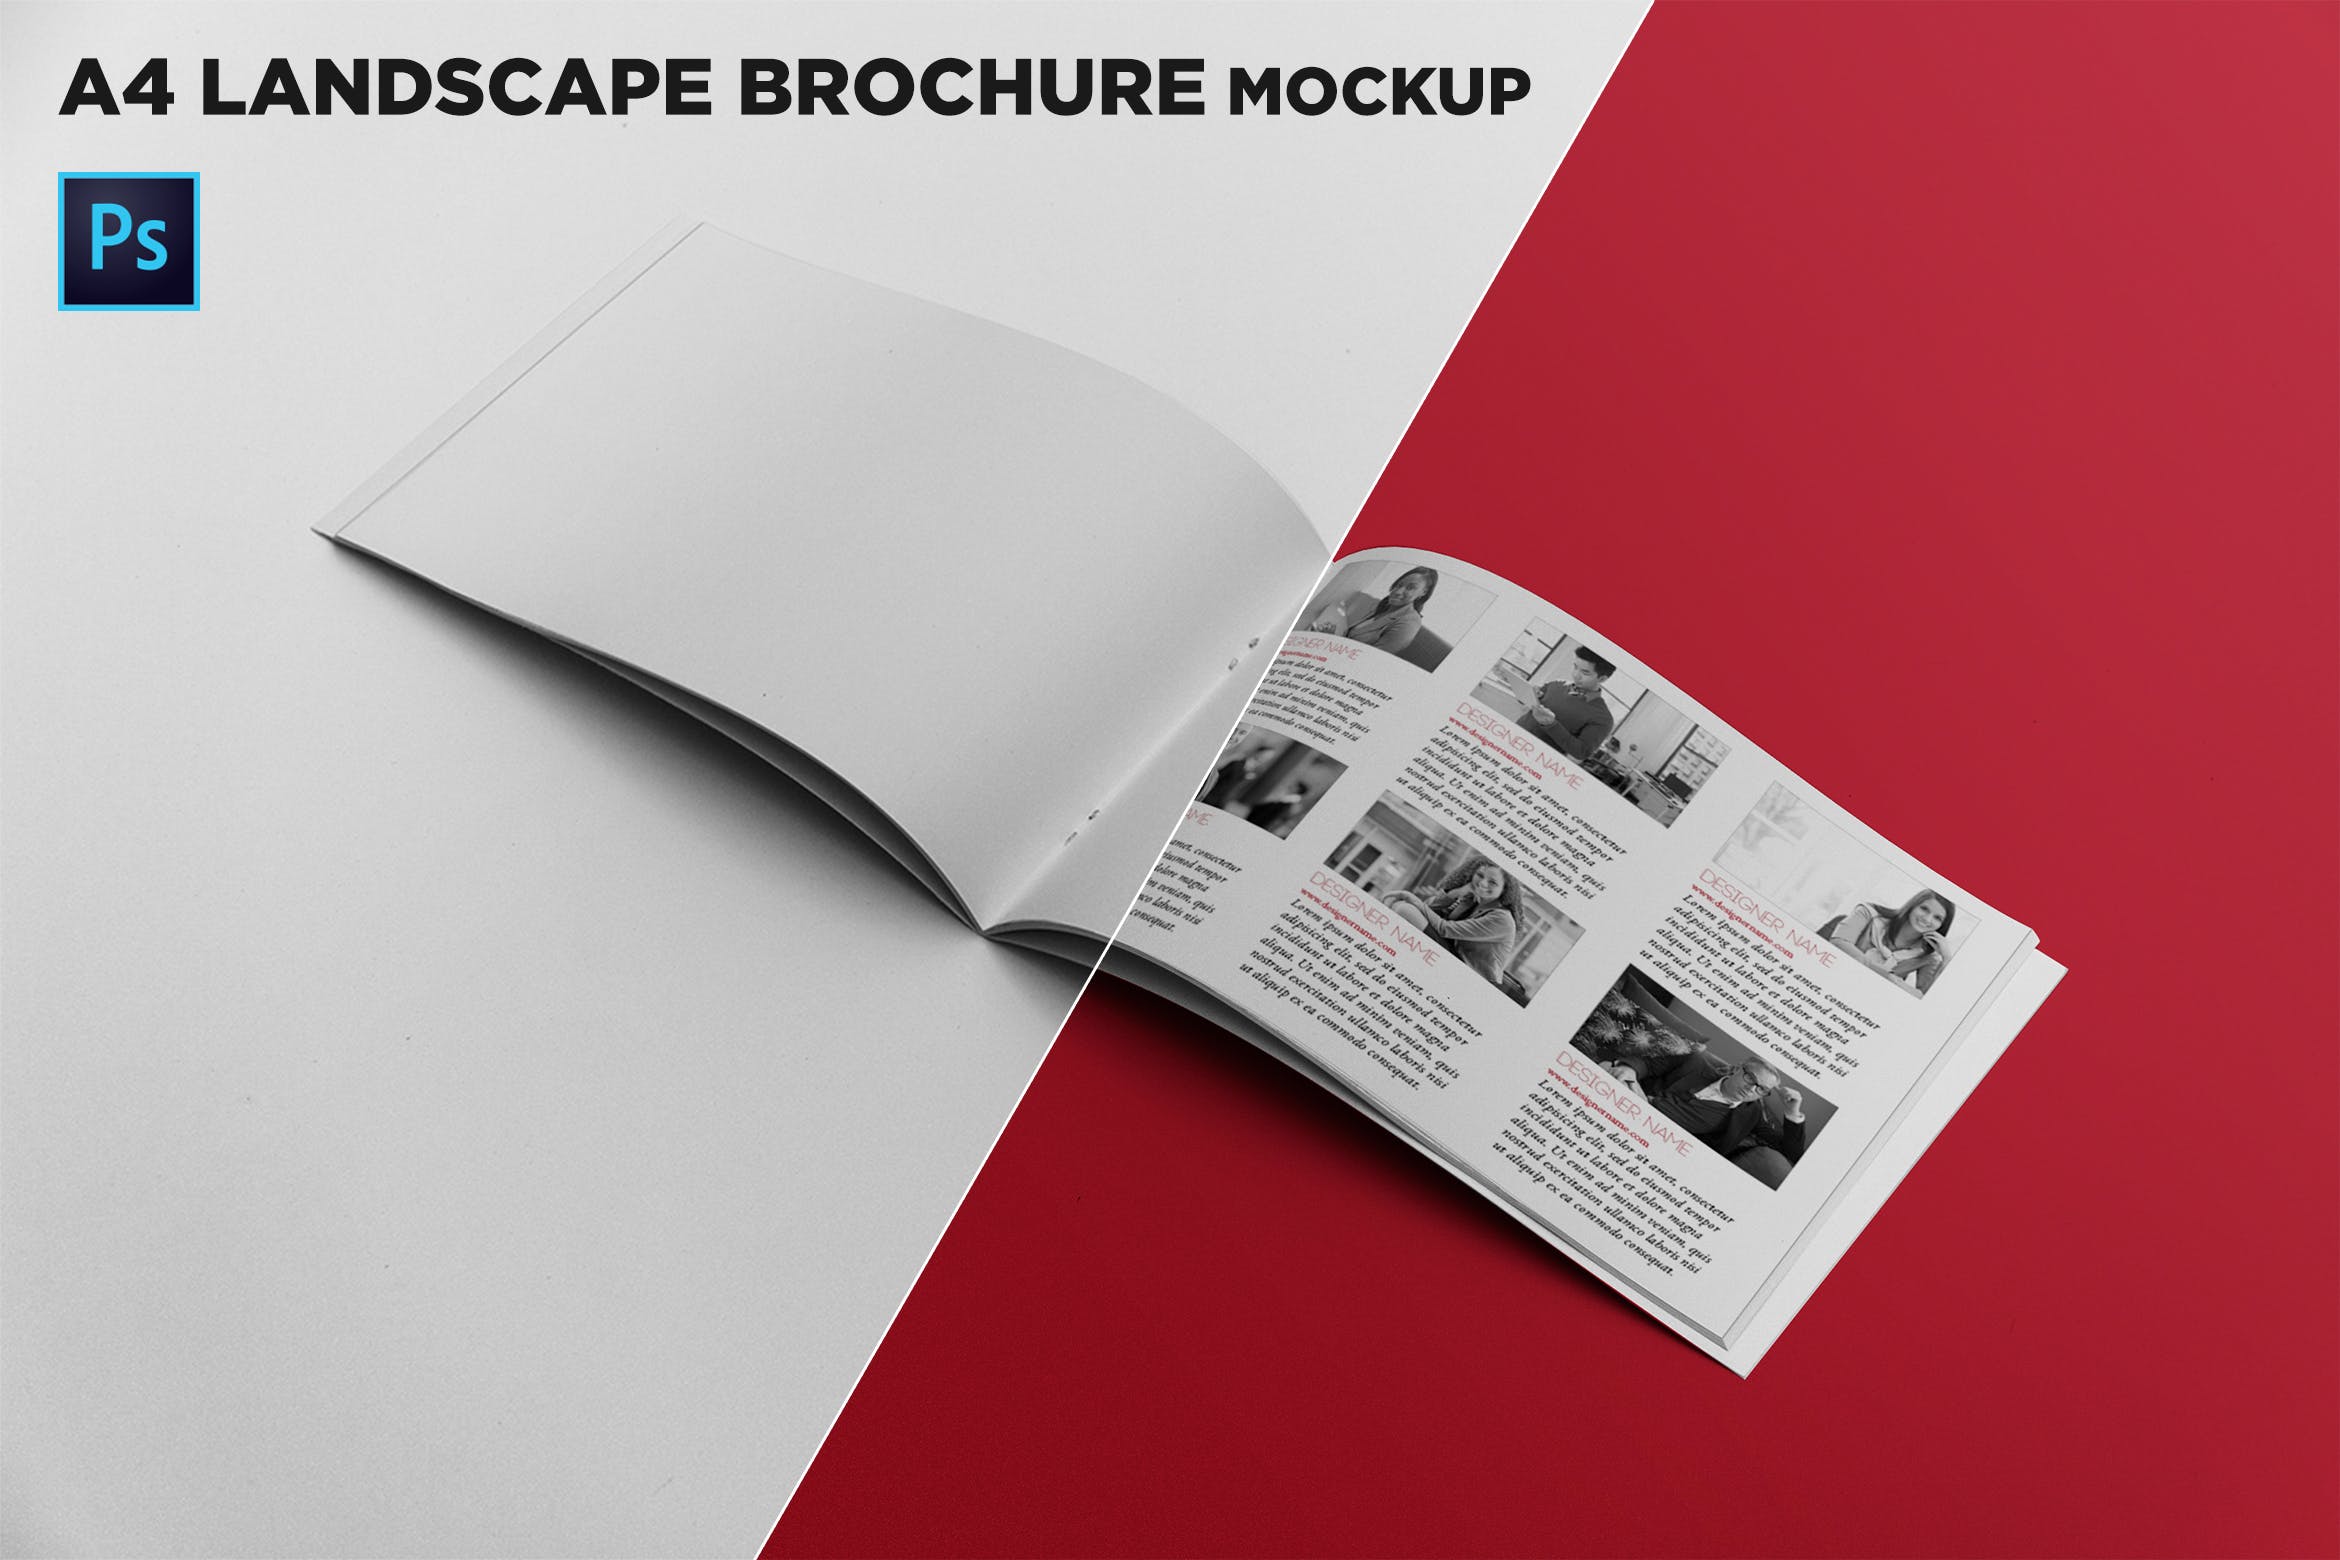 宣传画册/企业画册内页版式设计图样机普贤居精选 Open Landscape Brochure Mockup插图